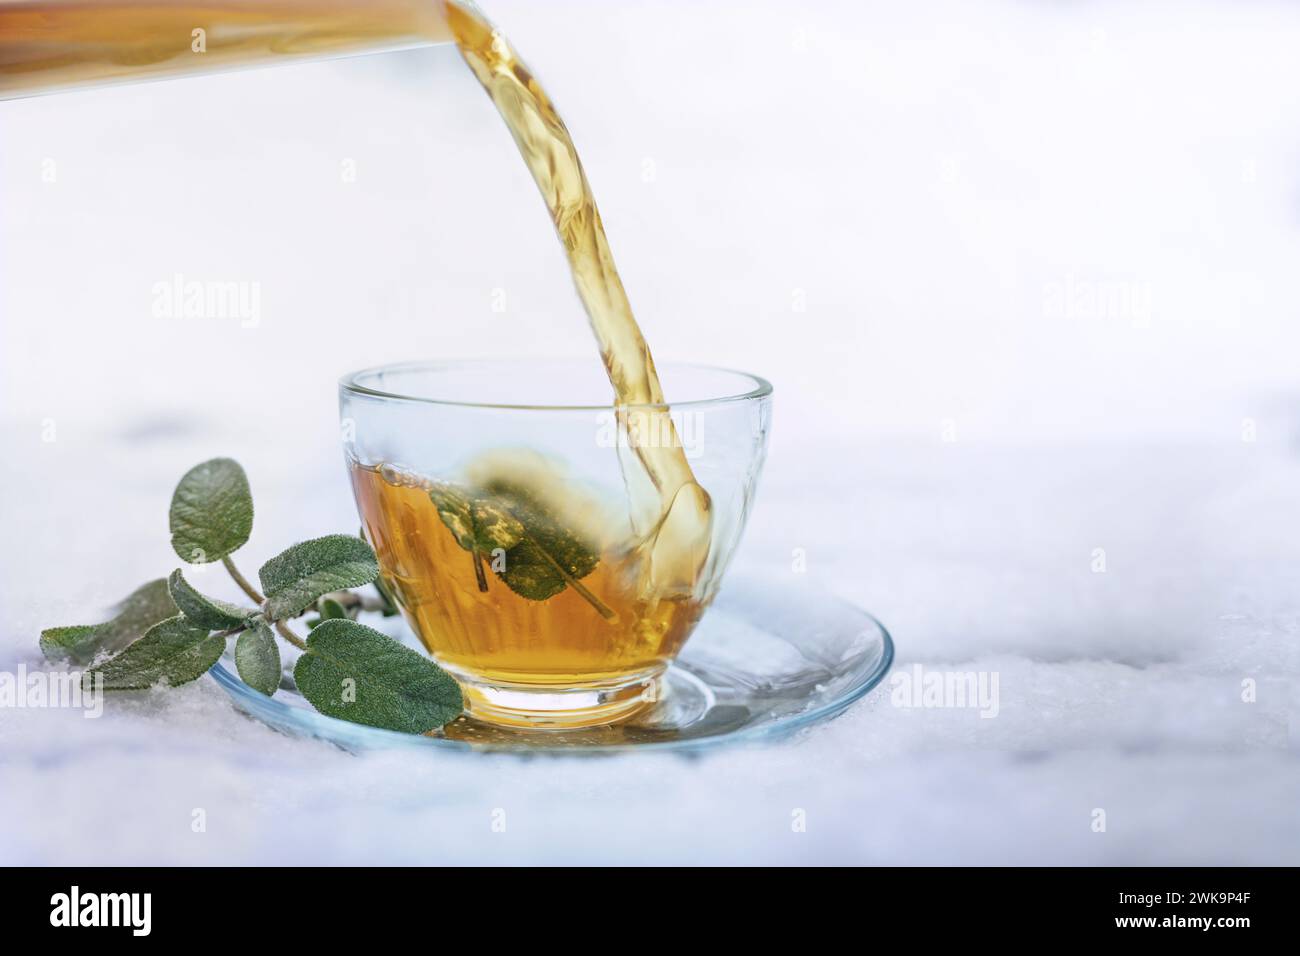 Le thé de sauge chaud est versé dans une tasse en verre avec quelques feuilles debout à l'extérieur dans la neige blanche, la médecine à base de plantes et remède maison contre la grippe et le froid en th Banque D'Images